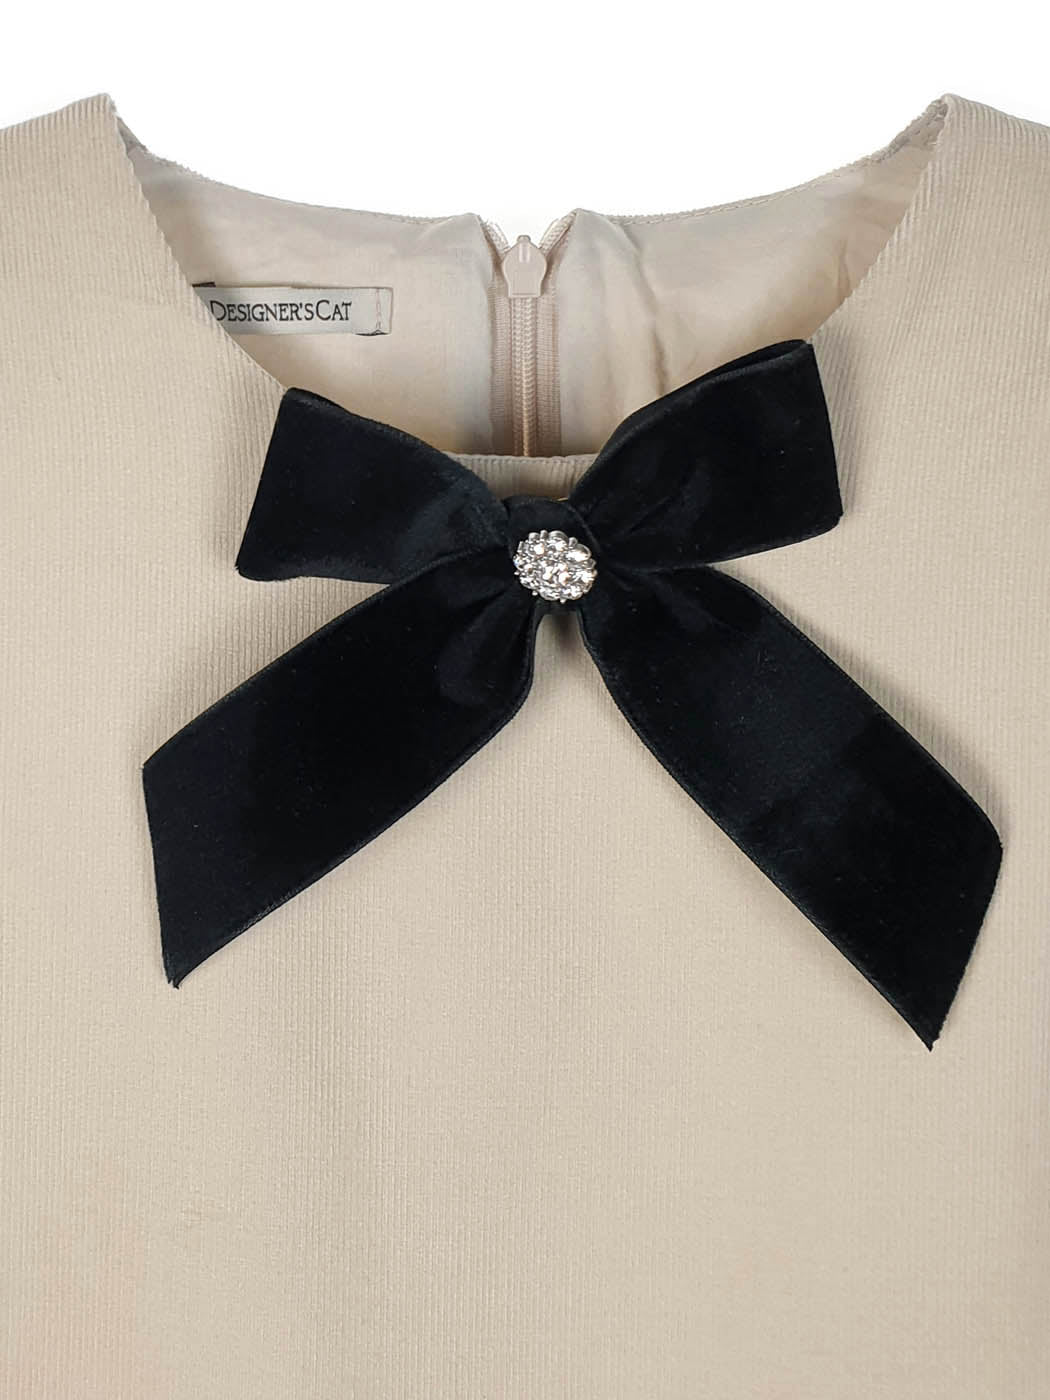 Elegant Corduroy Dress for girl-BLACK FOREST